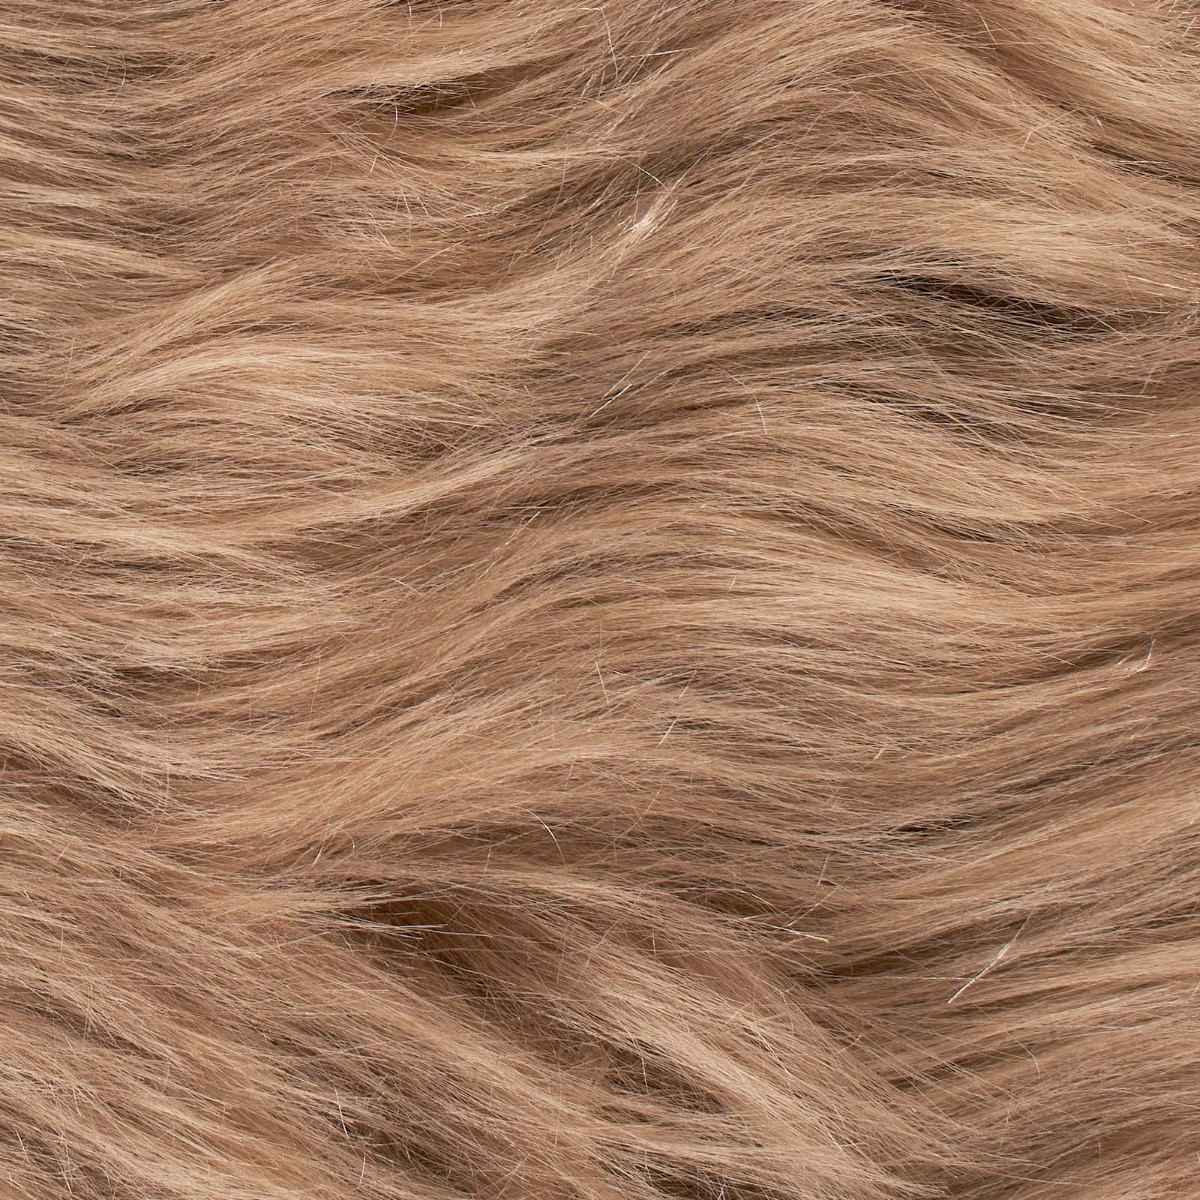 Sienna Faux Fur Sheepskin Rug, Natural - 60 x 90cm>